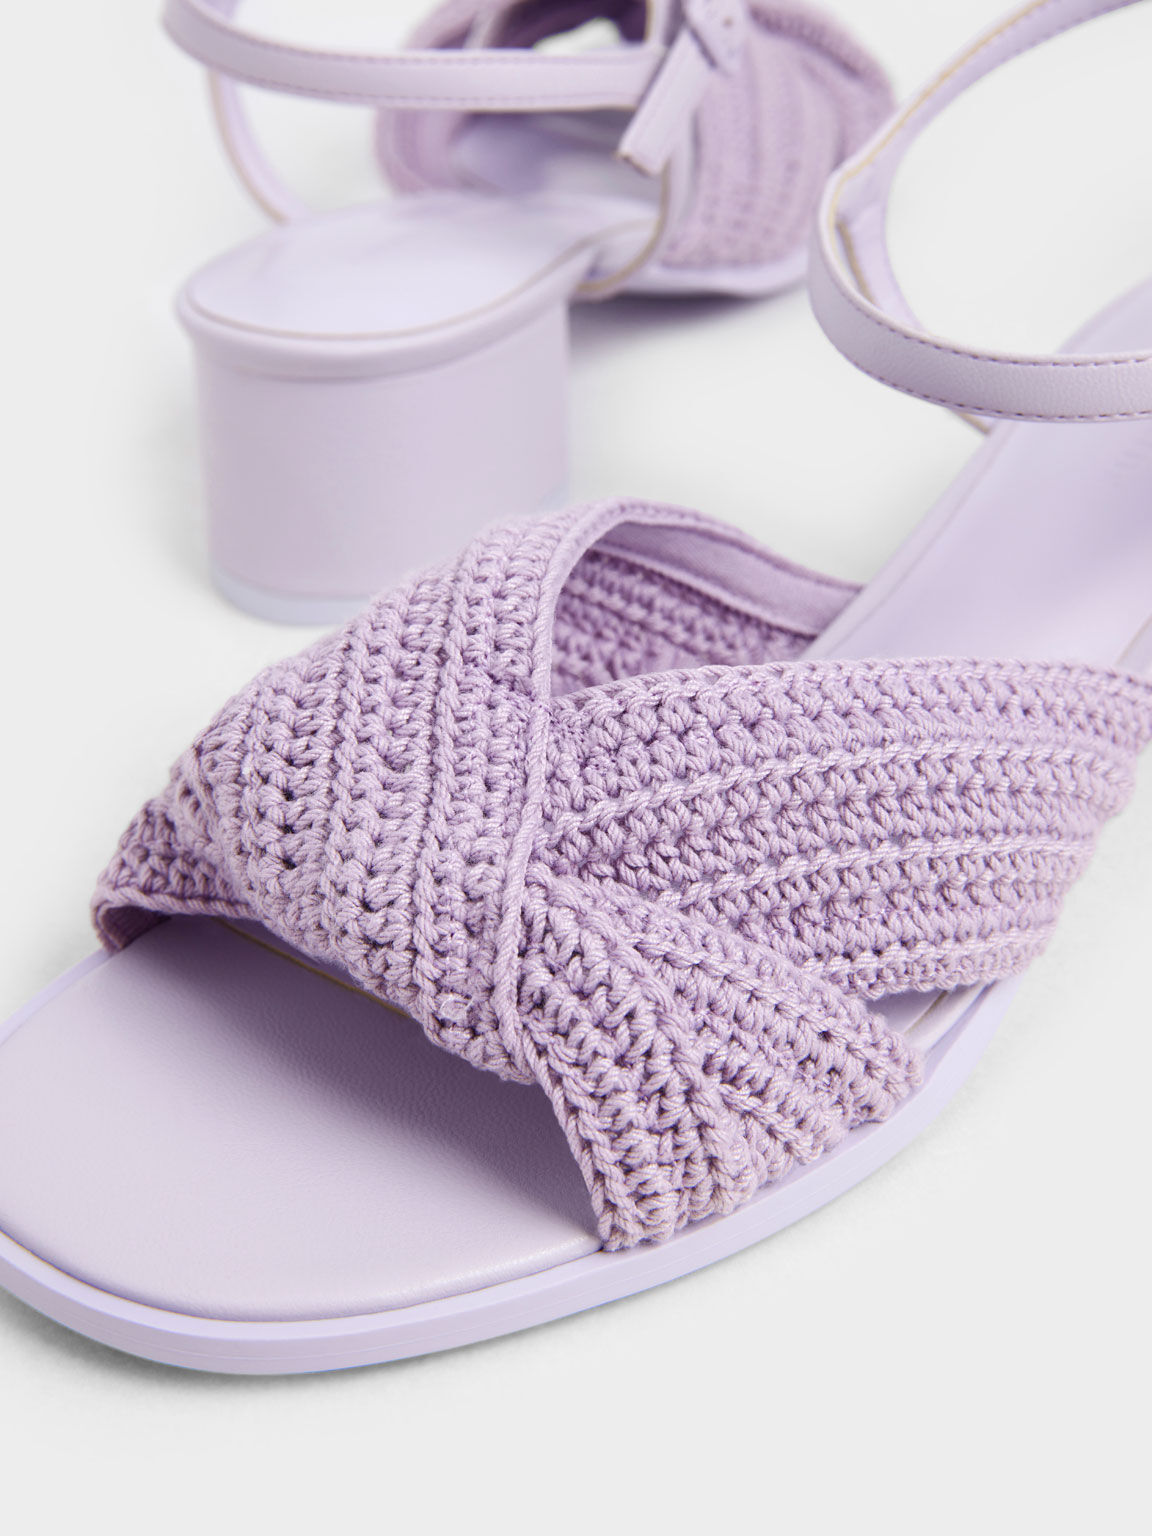 針織扭結粗跟涼鞋, 紫丁香色, hi-res